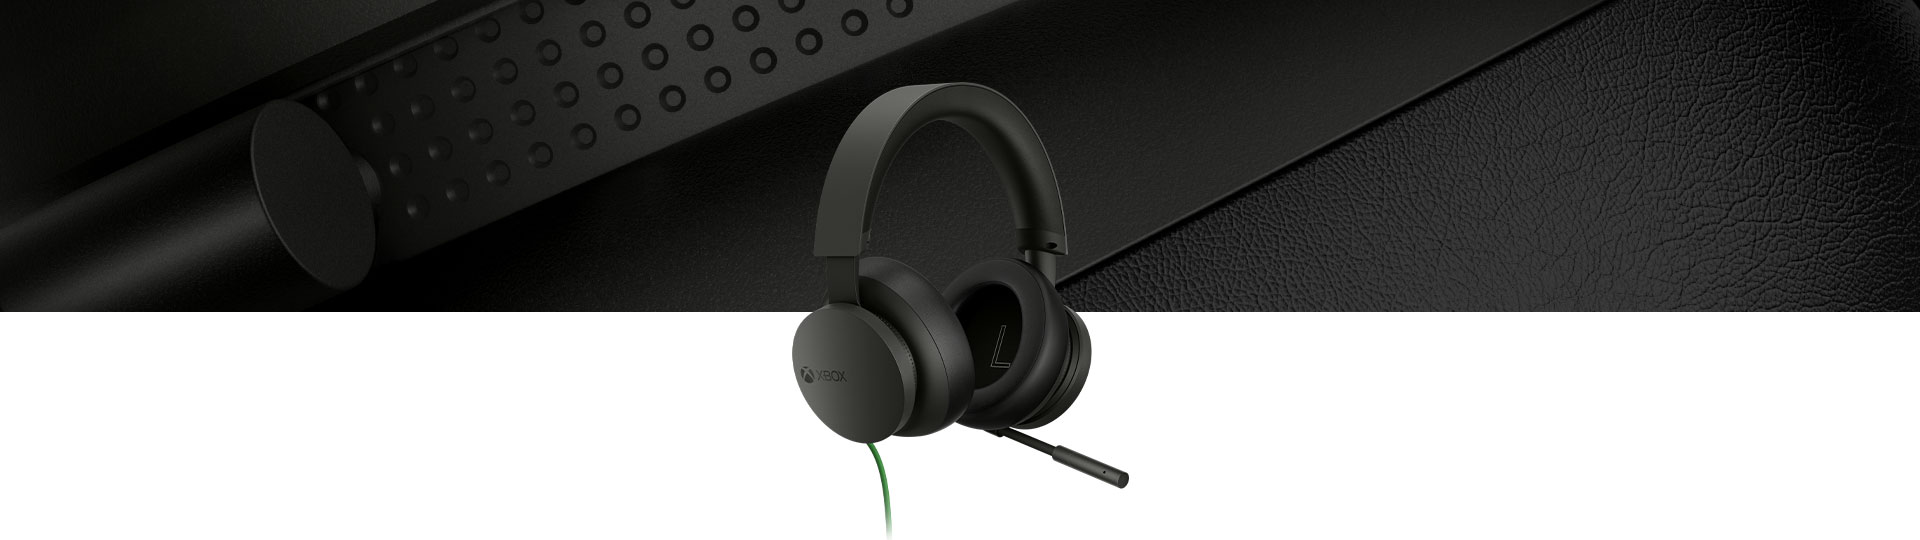 Zestaw słuchawkowy stereo do konsoli Xbox, zbliżenie na zestaw słuchawkowy w tle